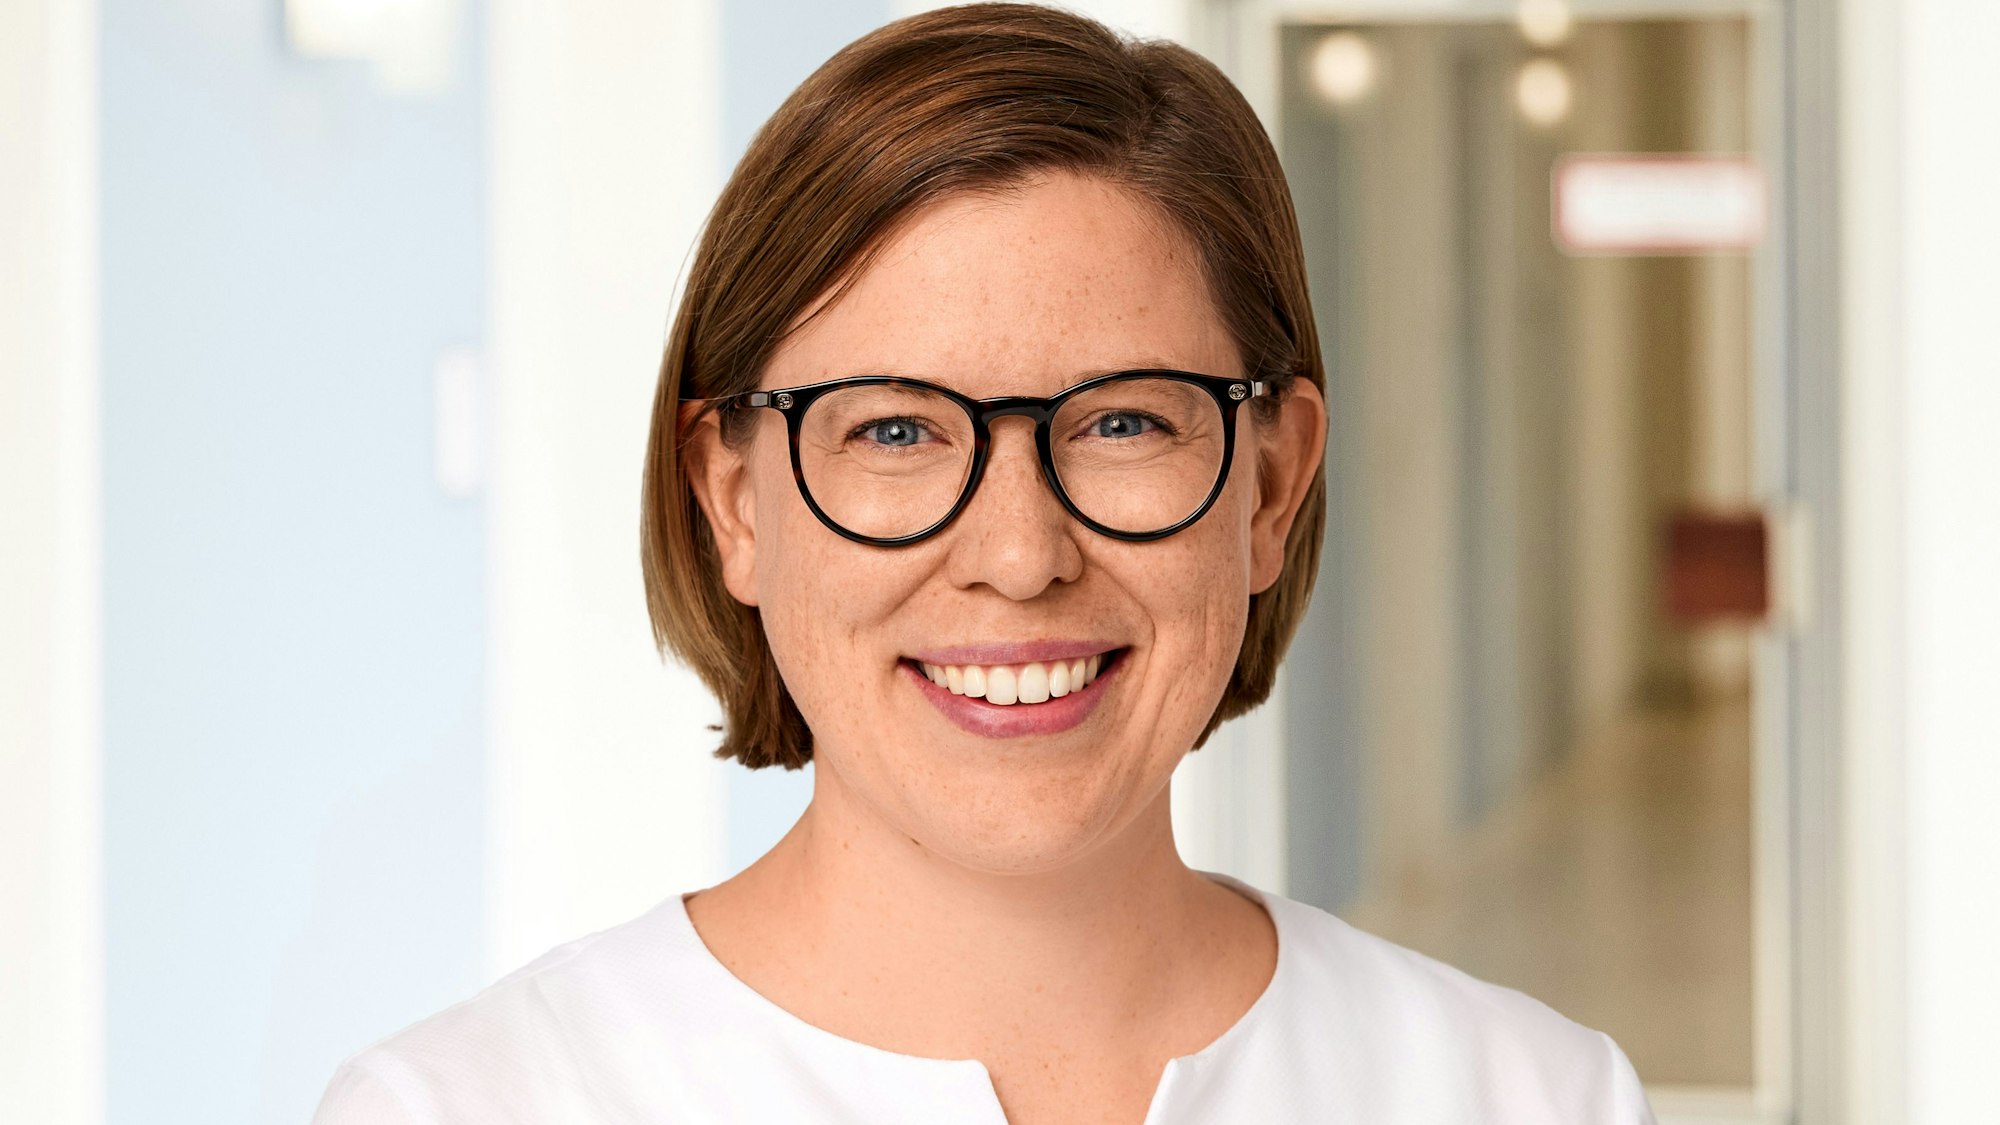 Porträtfoto der Ökonomin Anna Bindler von der Kölner Universität